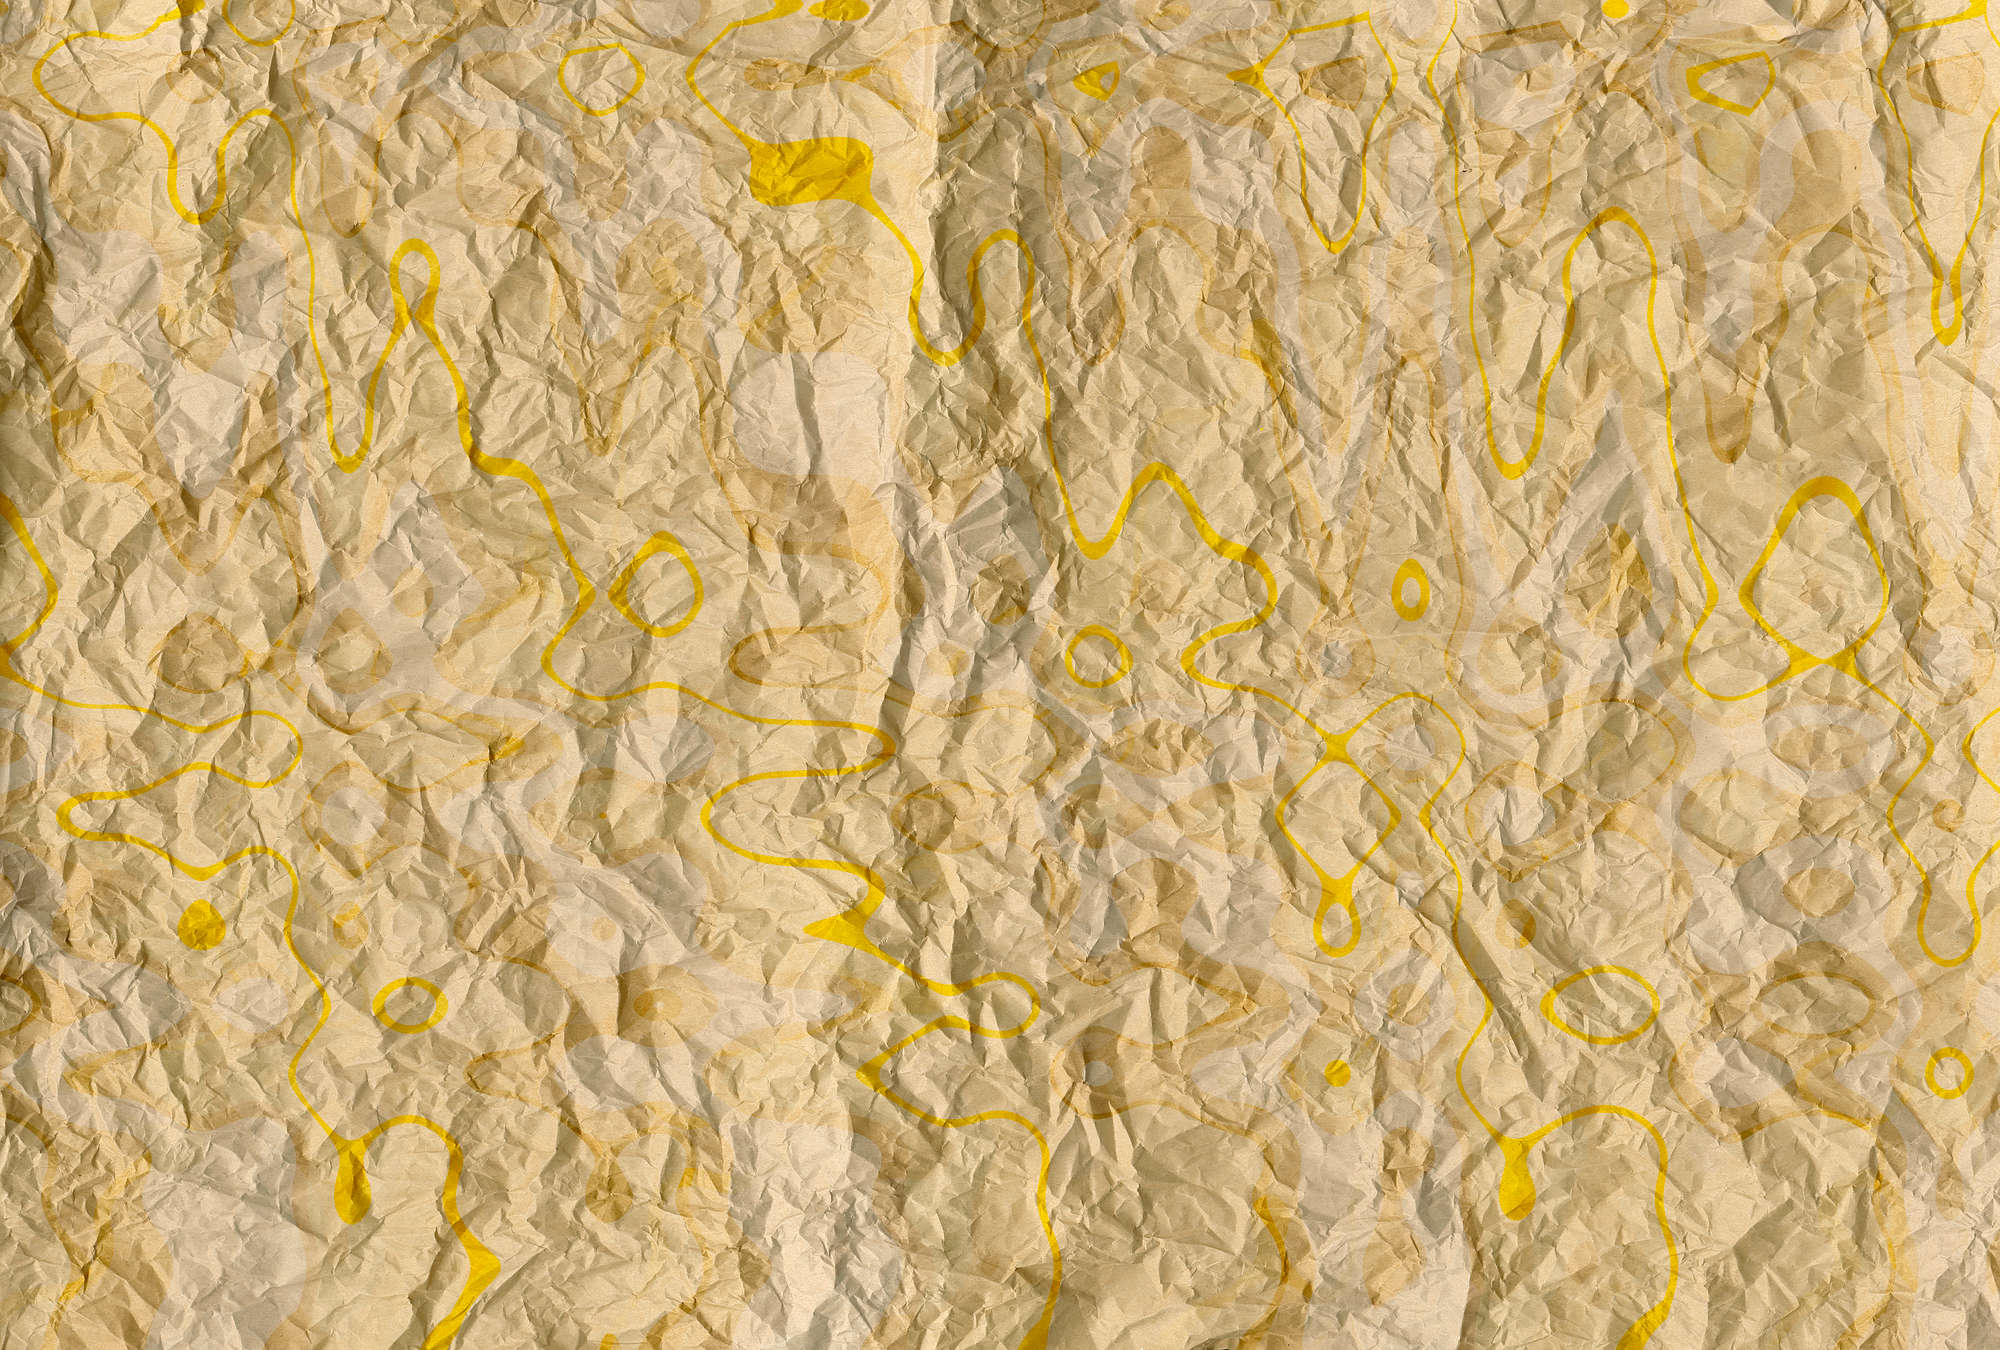             Papel pintado con motivos retro y aspecto de papel para habitación juvenil - Amarillo, Naranja
        